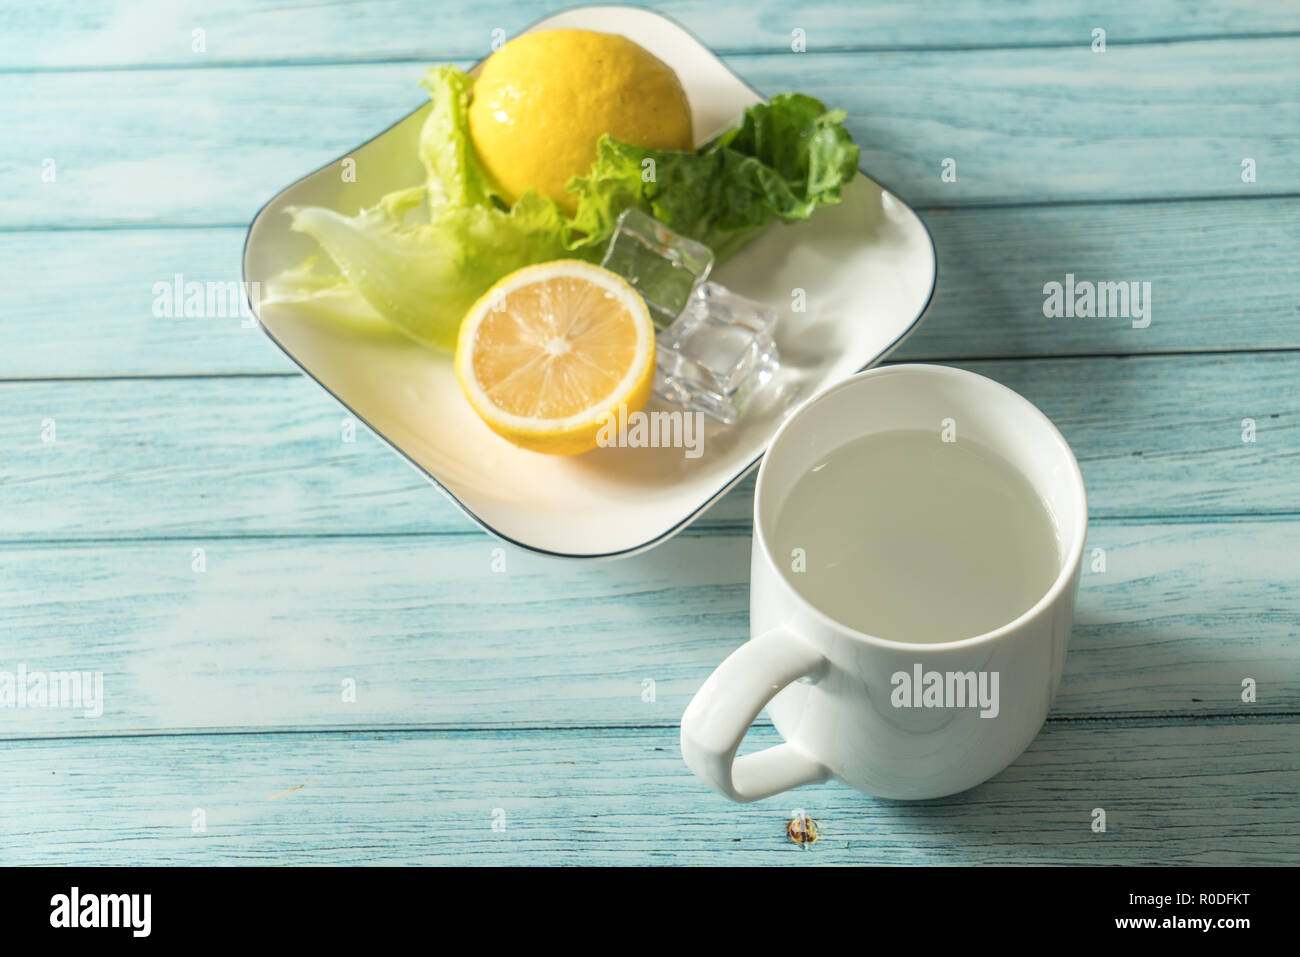 Lemon and cyan background Stock Photo